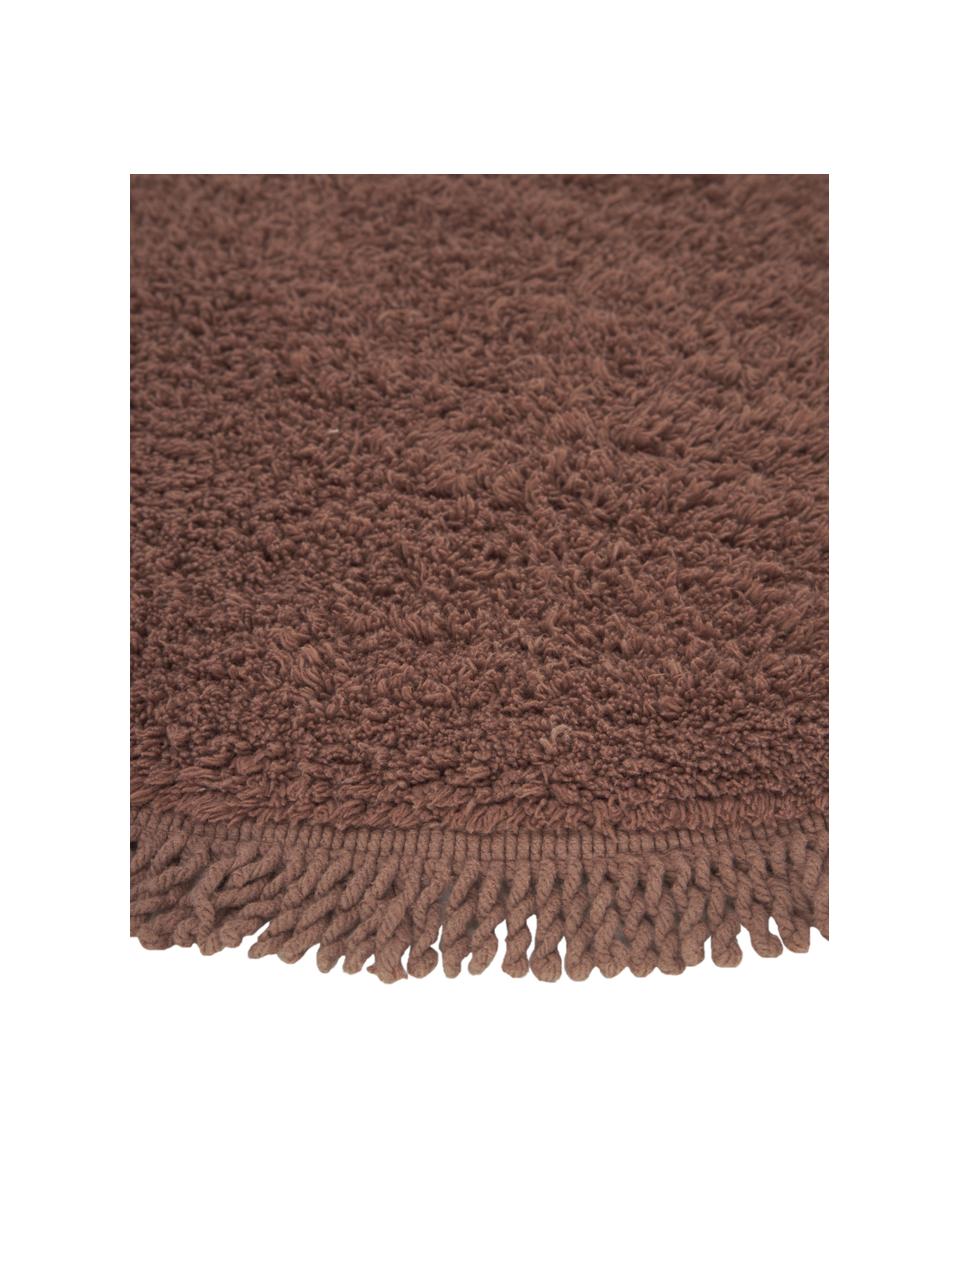 Tappeto bagno rotondo in cotone marrone Loose, 100% cotone, Marrone, Ø 70 cm